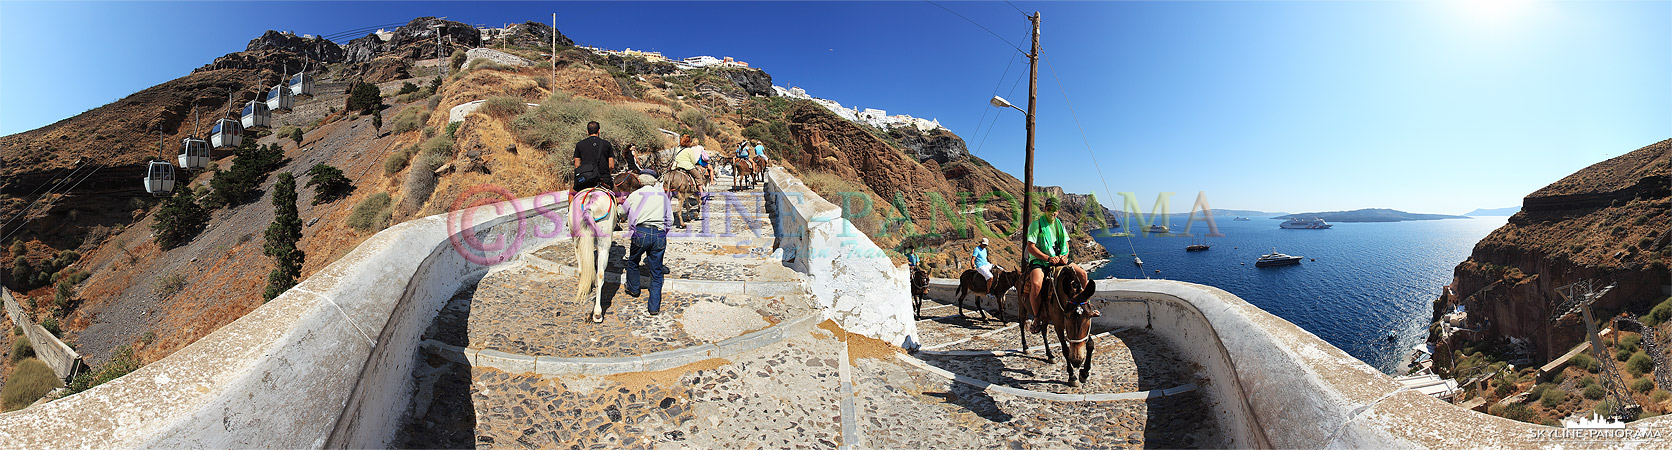 Eselreiten auf Santorini (p_00360)